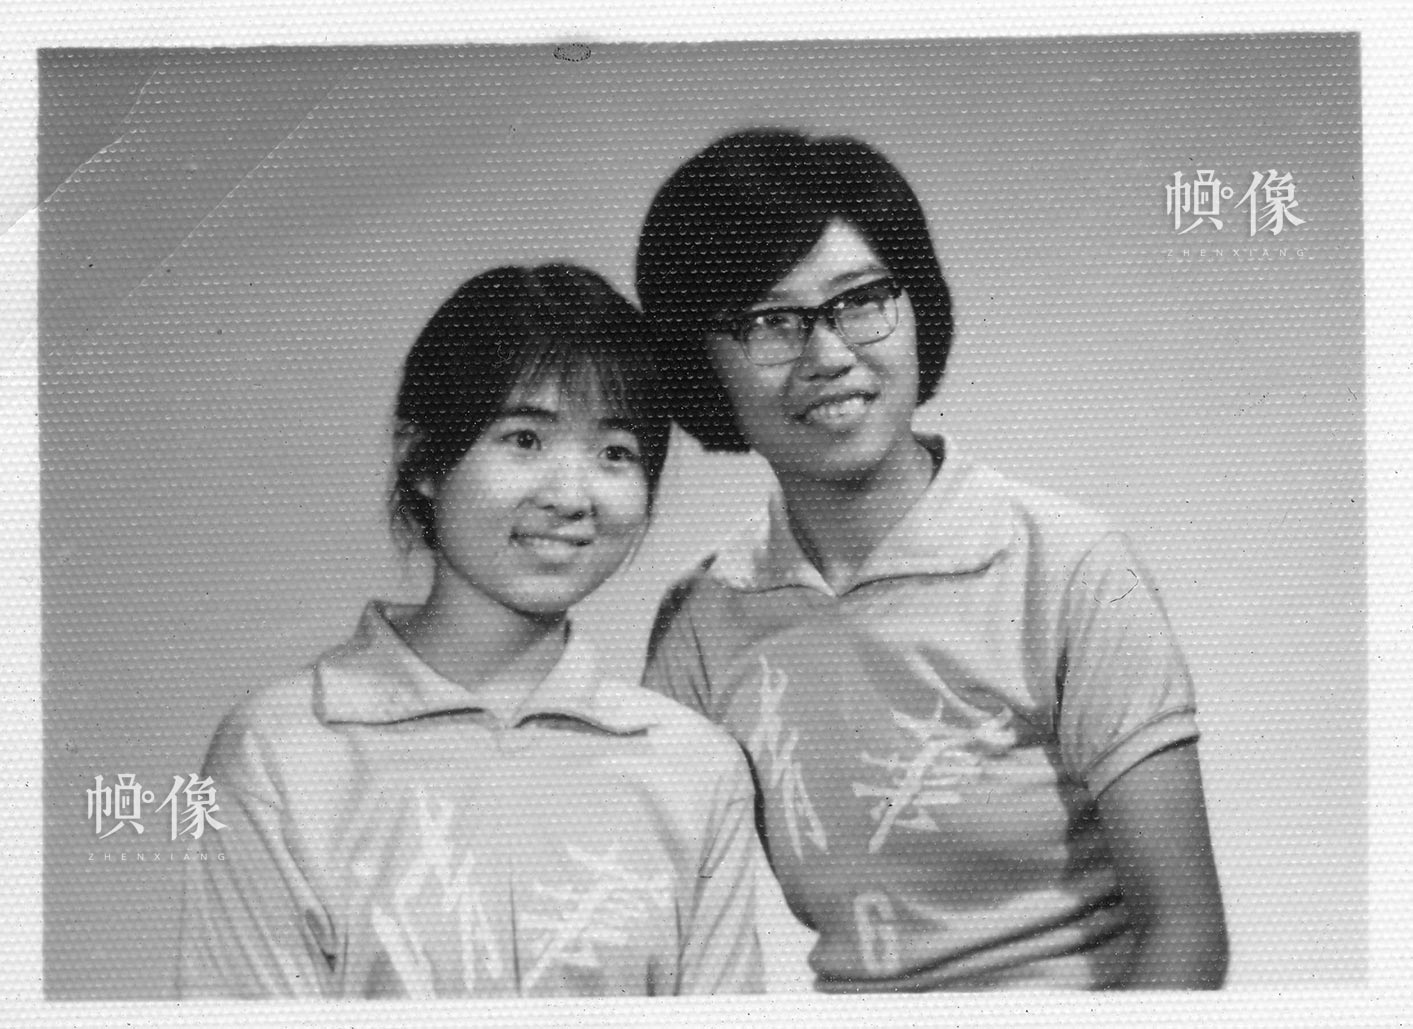 清華大學1977級自動化係學生韓景陽與排球隊同學合影。